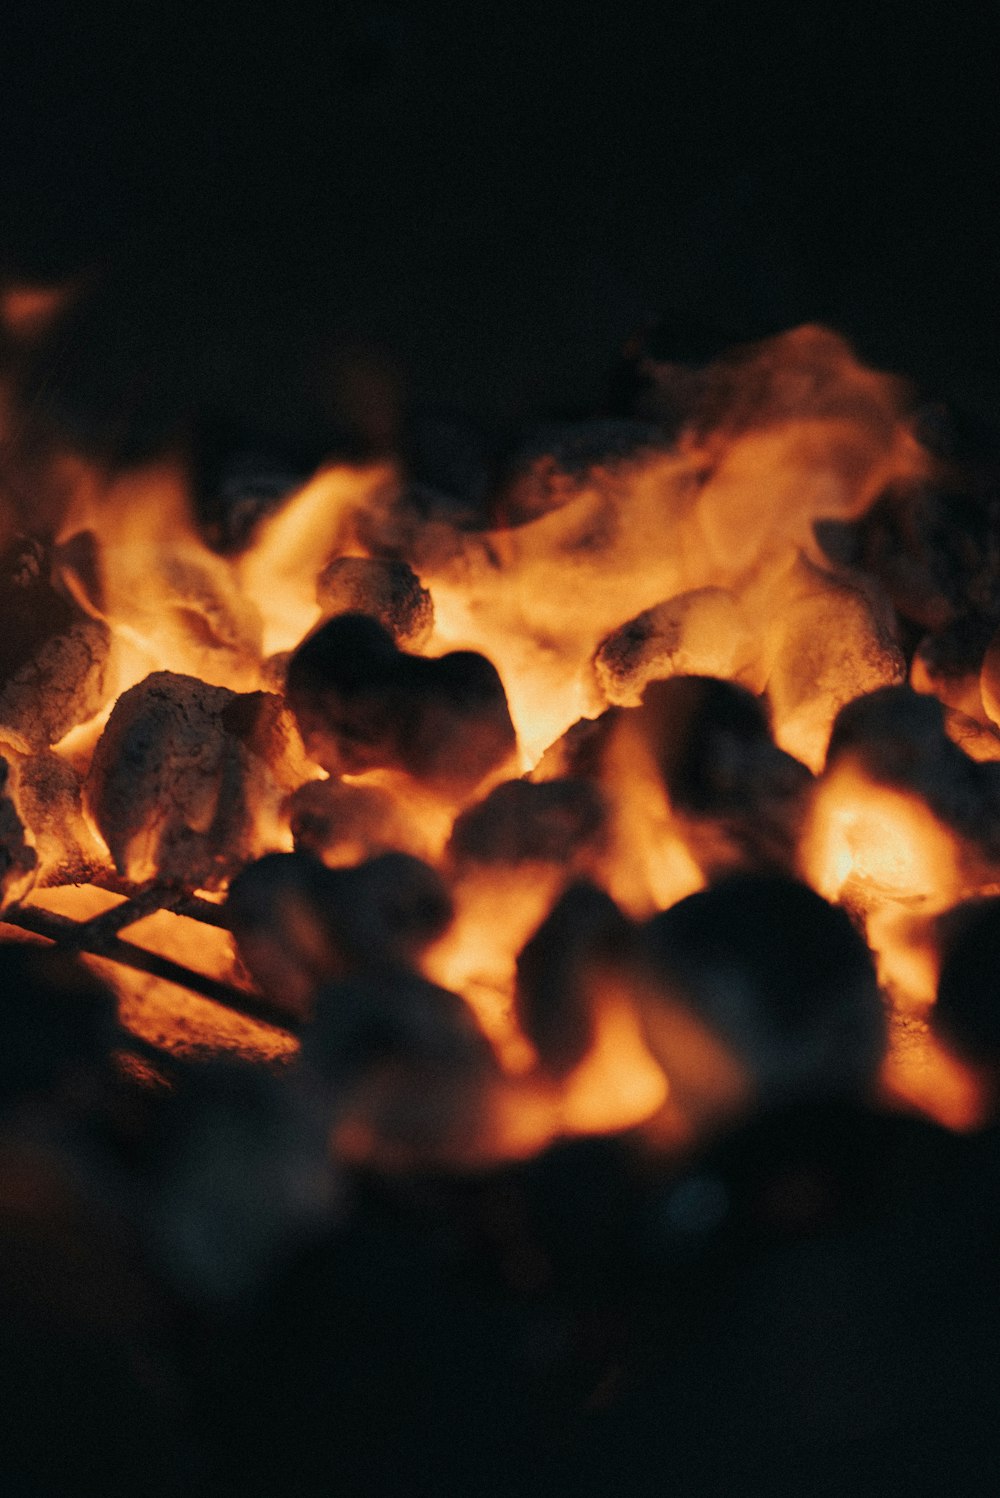 queima de lenha na fogueira